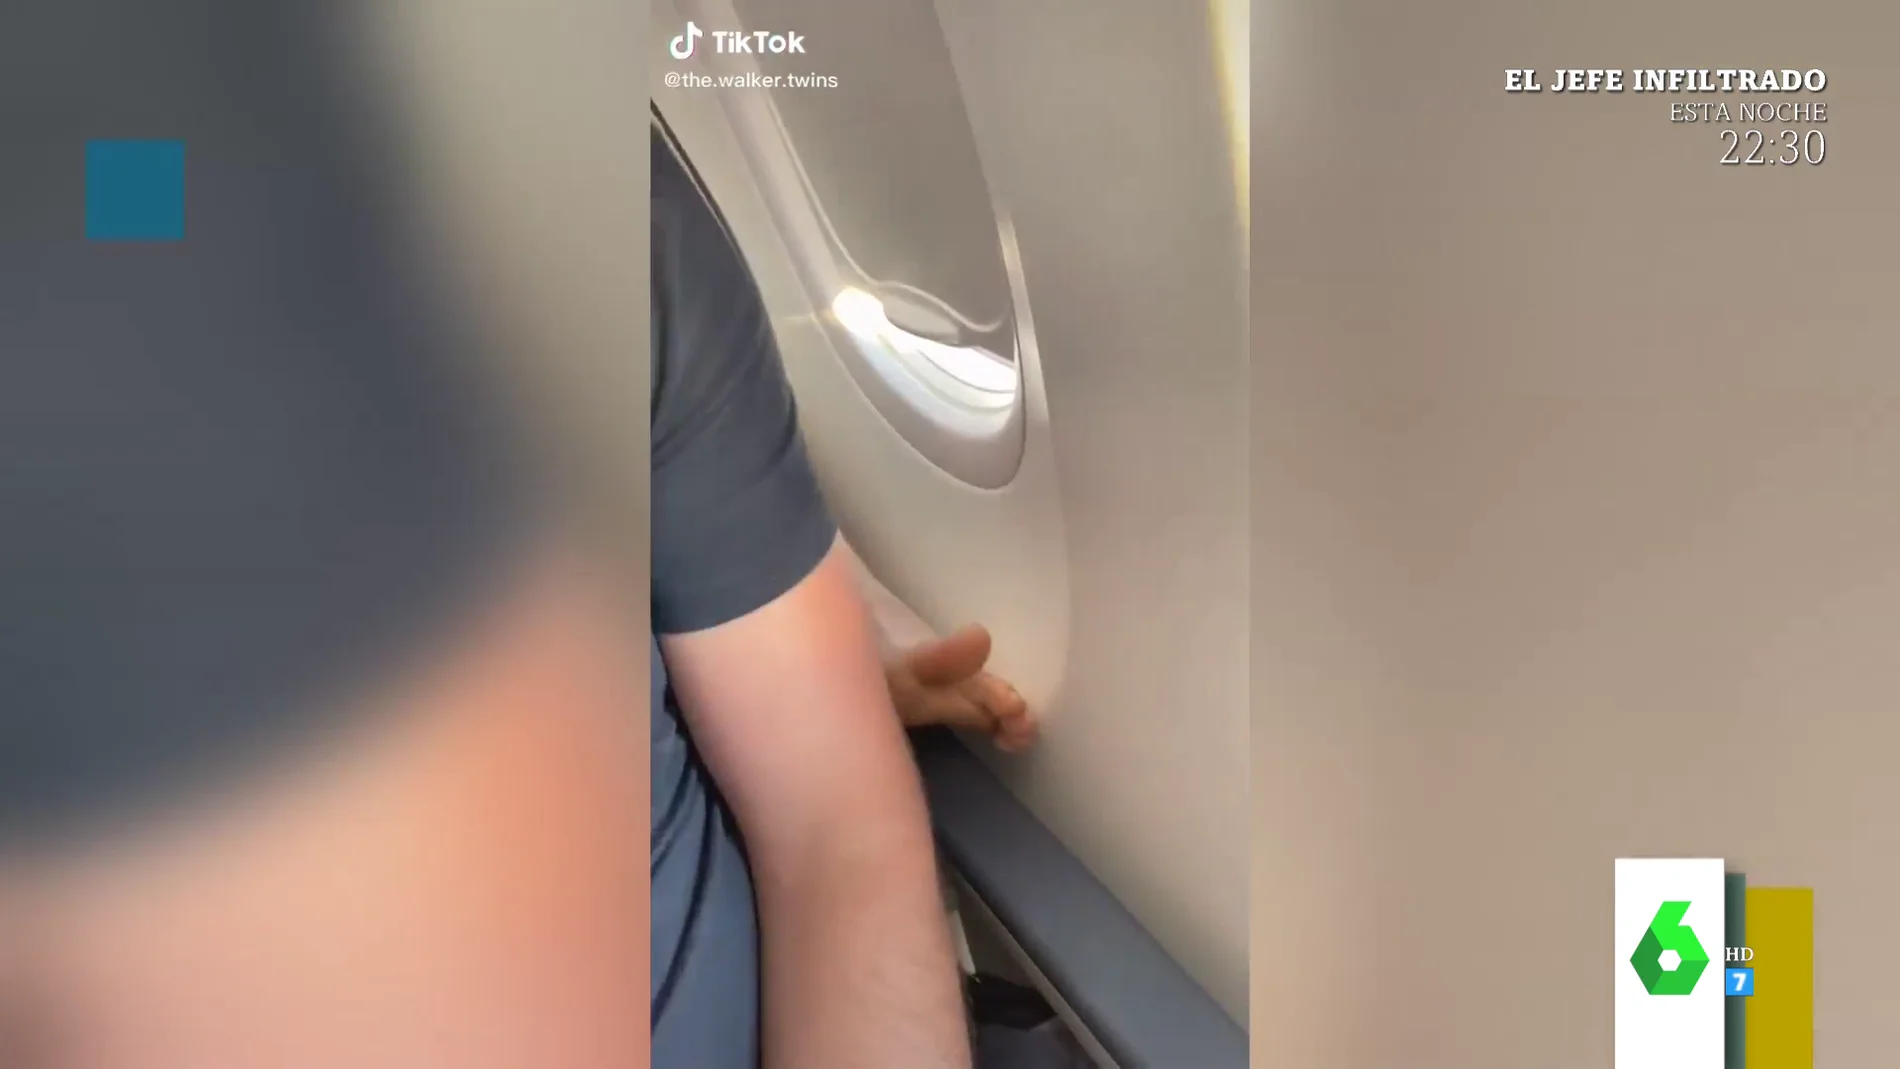 Le echa agua en el pie para que lo quite de su reposabrazos: la ingeniosa idea de un pasajero en pleno avión